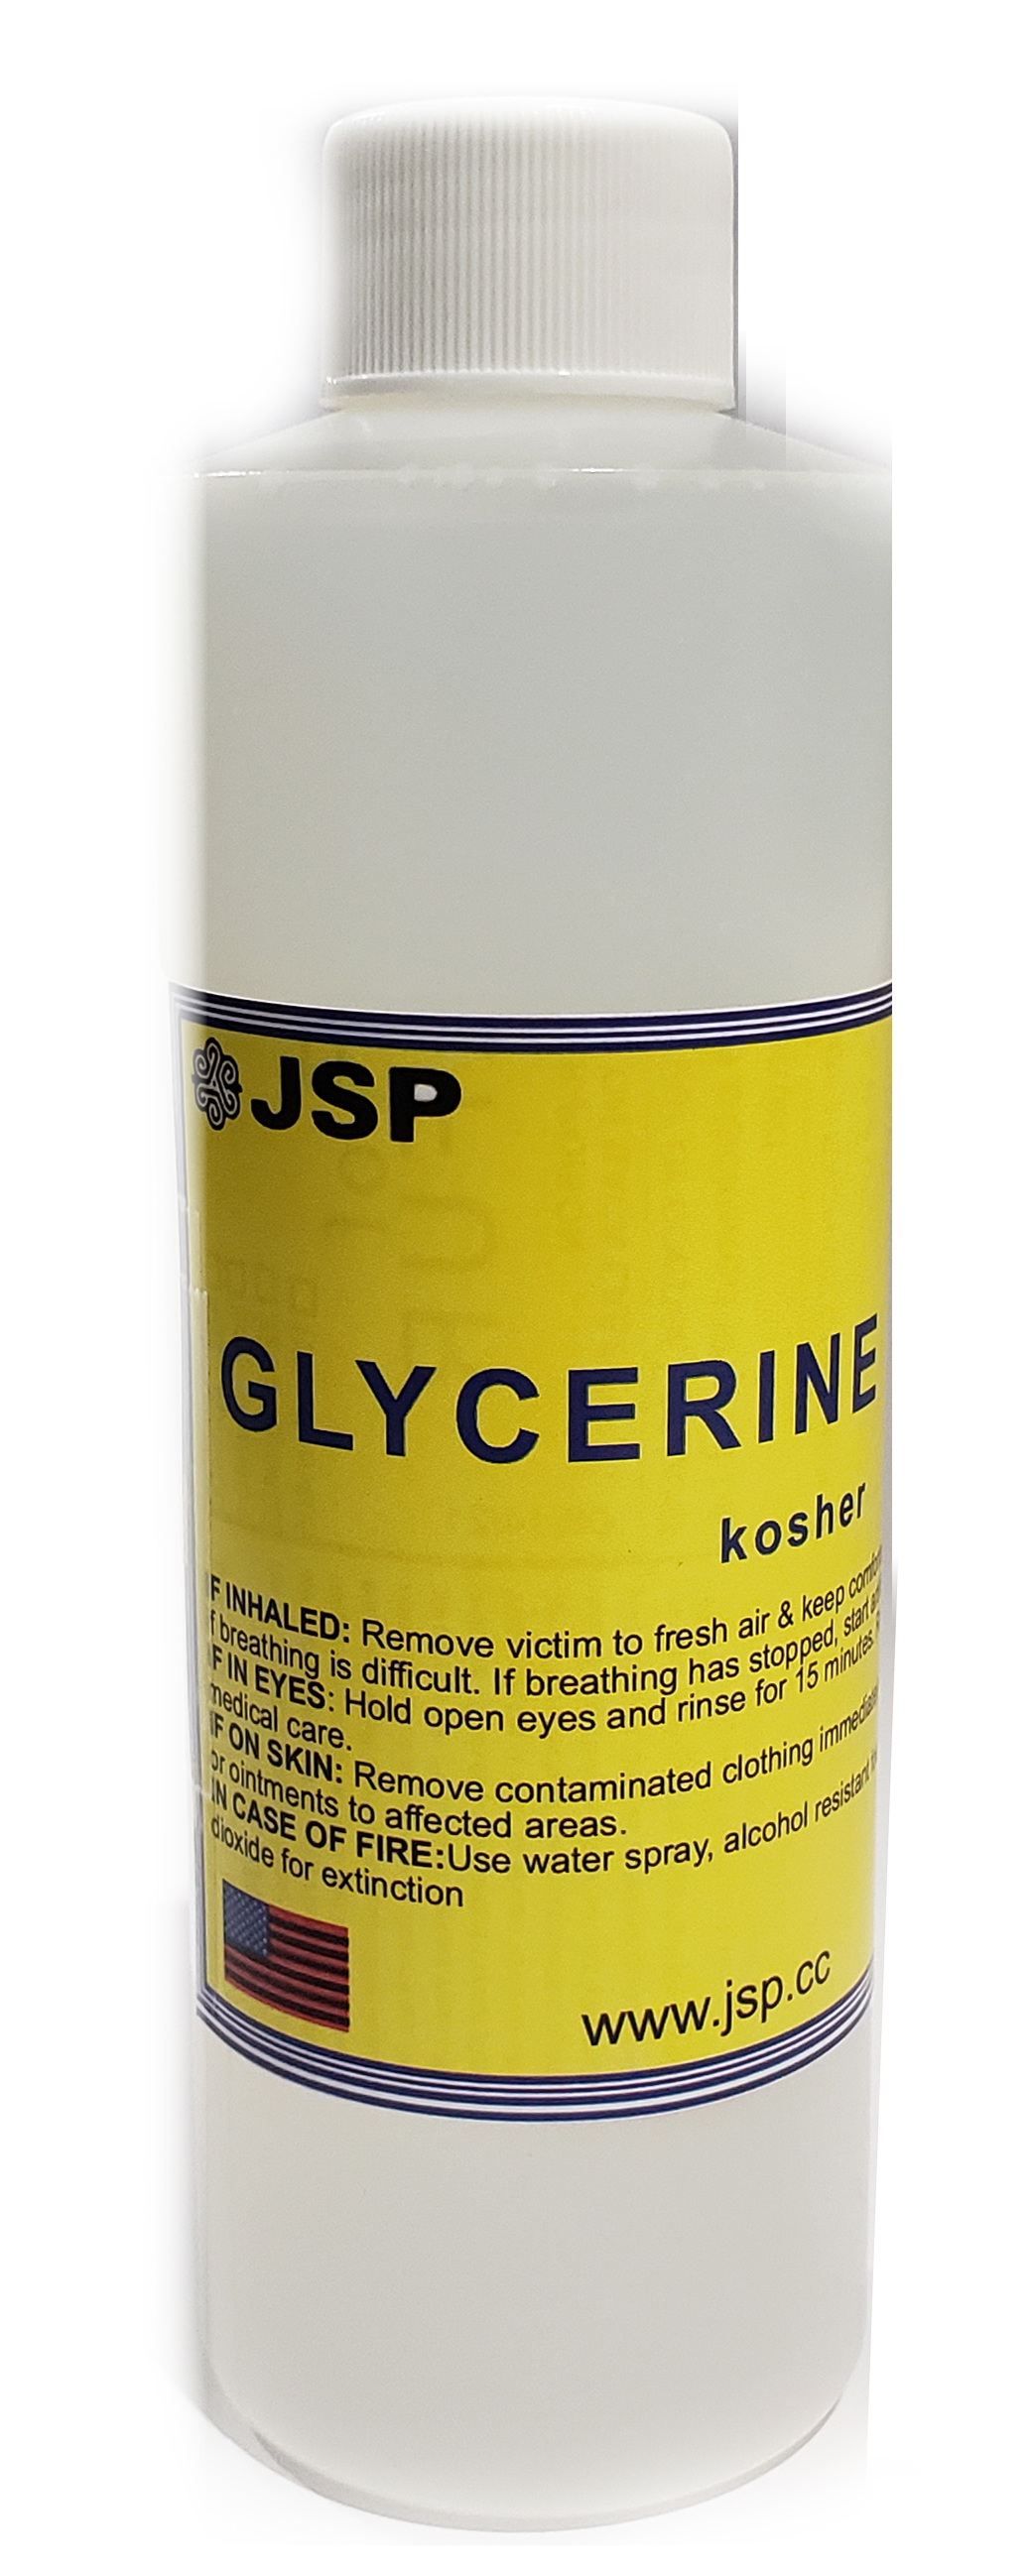 GLYCERINE/GLYCEROL 99.7% 16 oz